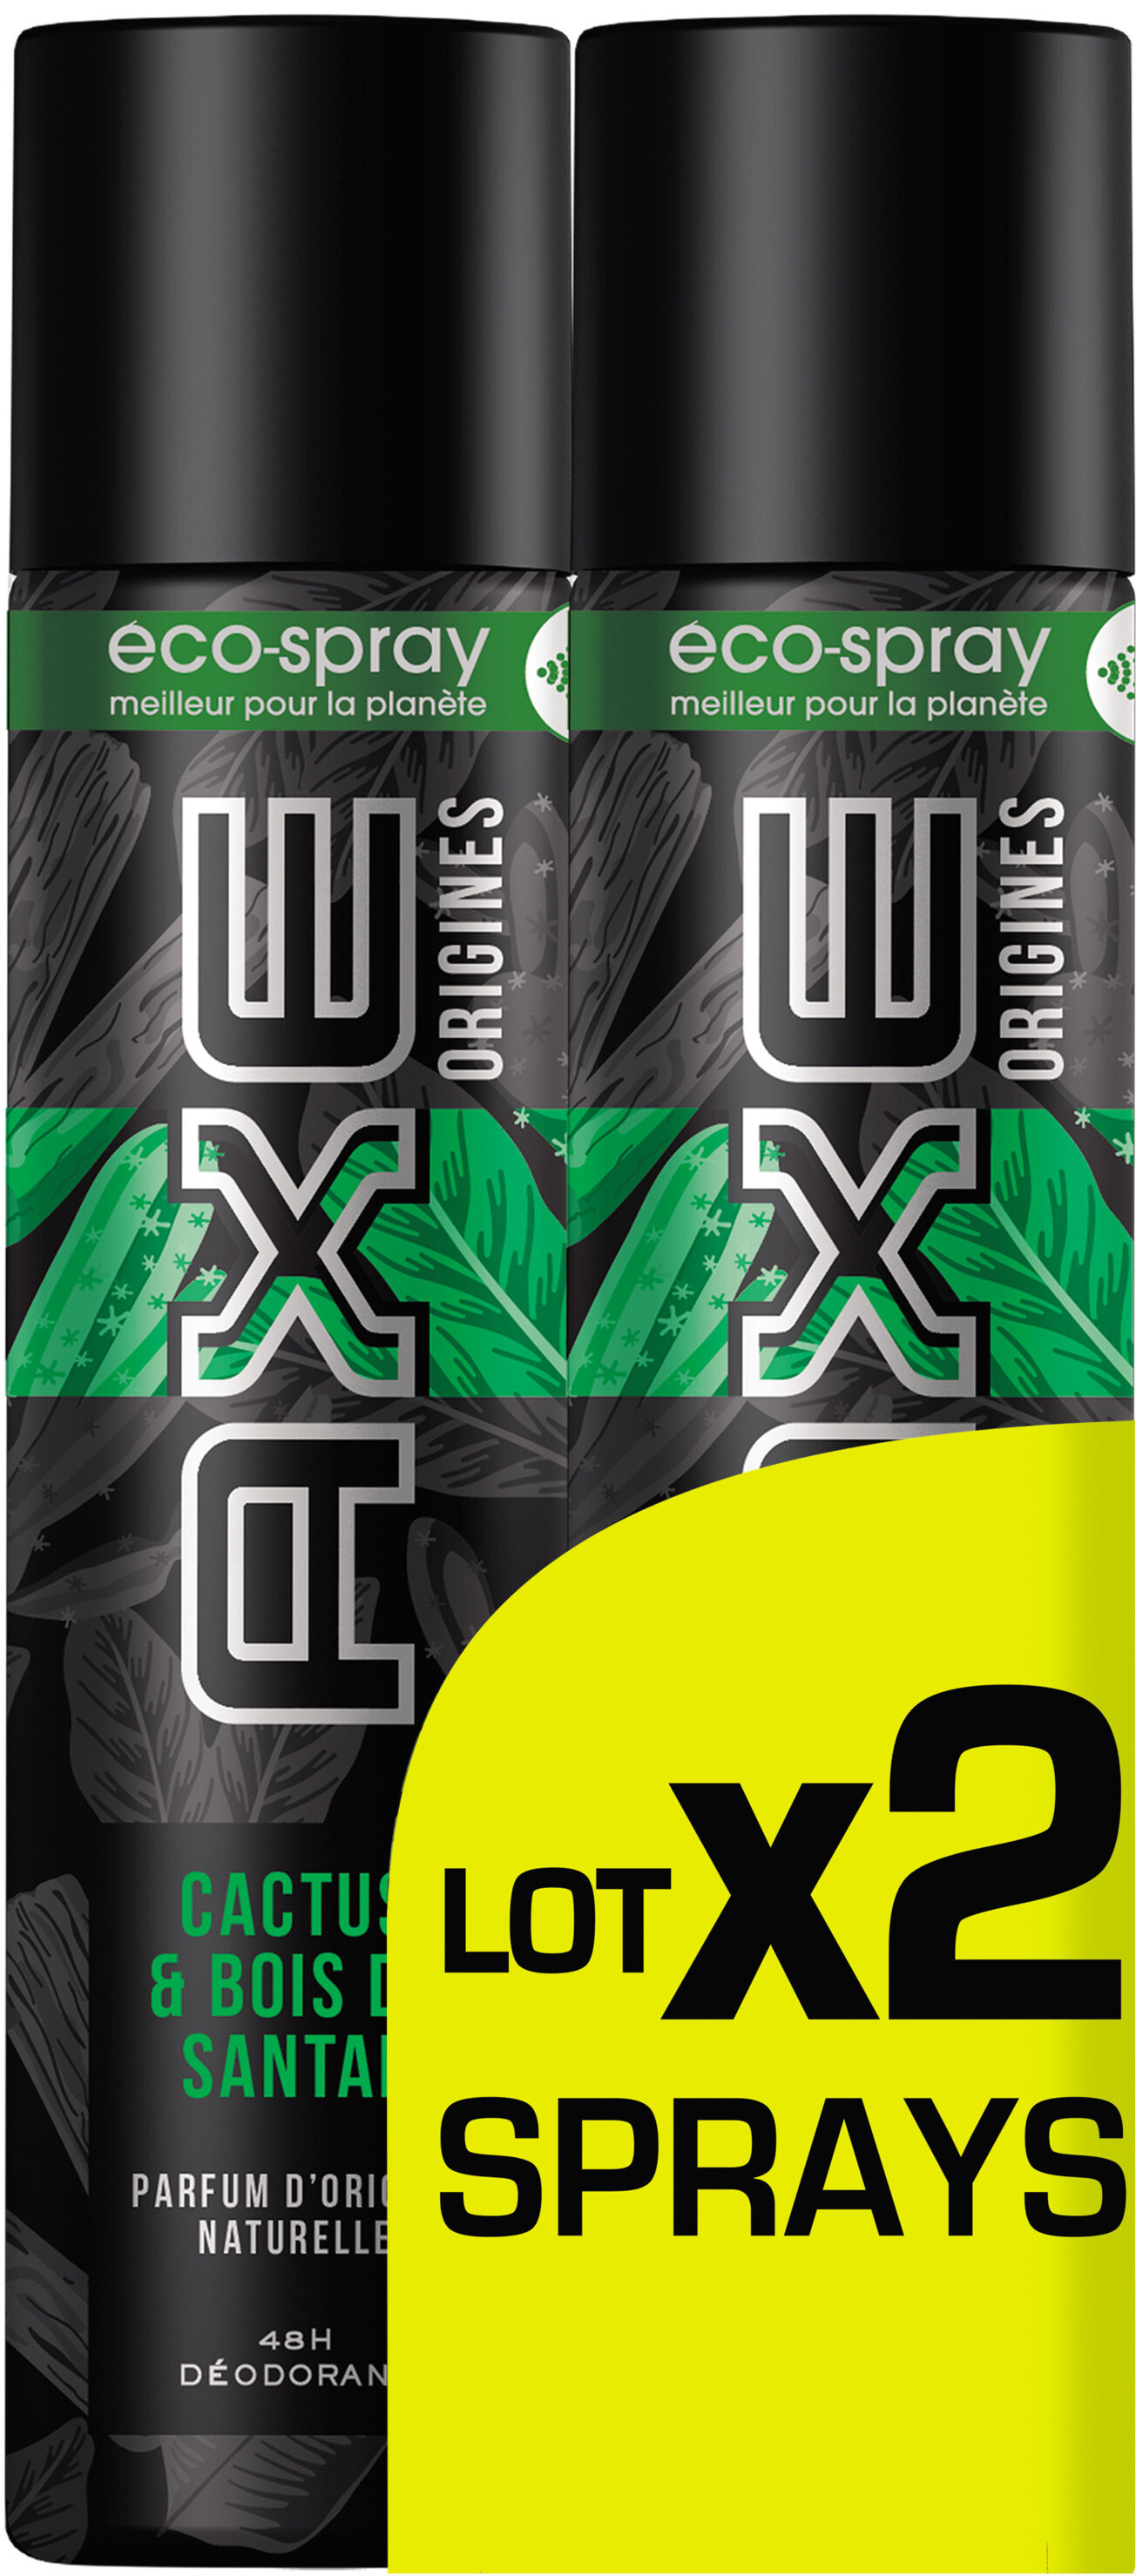 AXE Déodorant Homme Spray Origines Cactus Lot 2X75ml - Product - fr